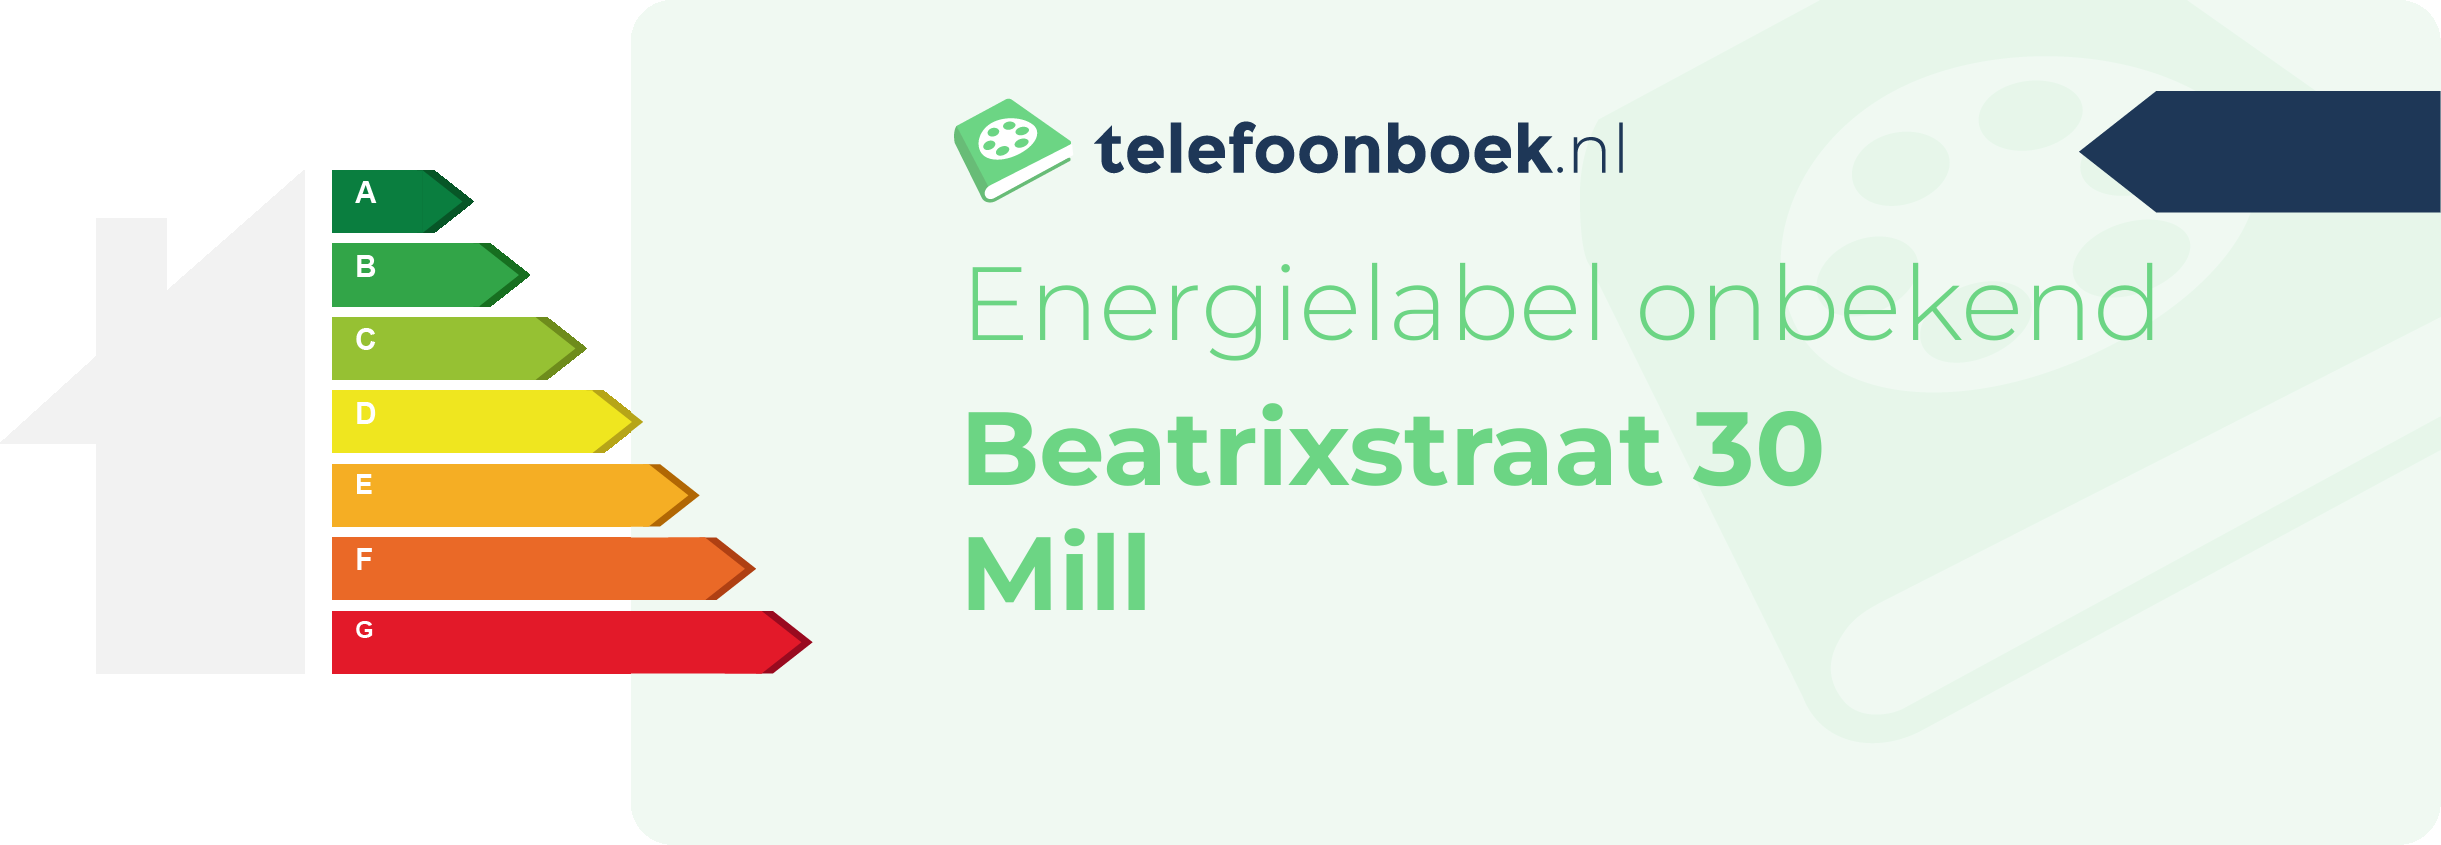 Energielabel Beatrixstraat 30 Mill